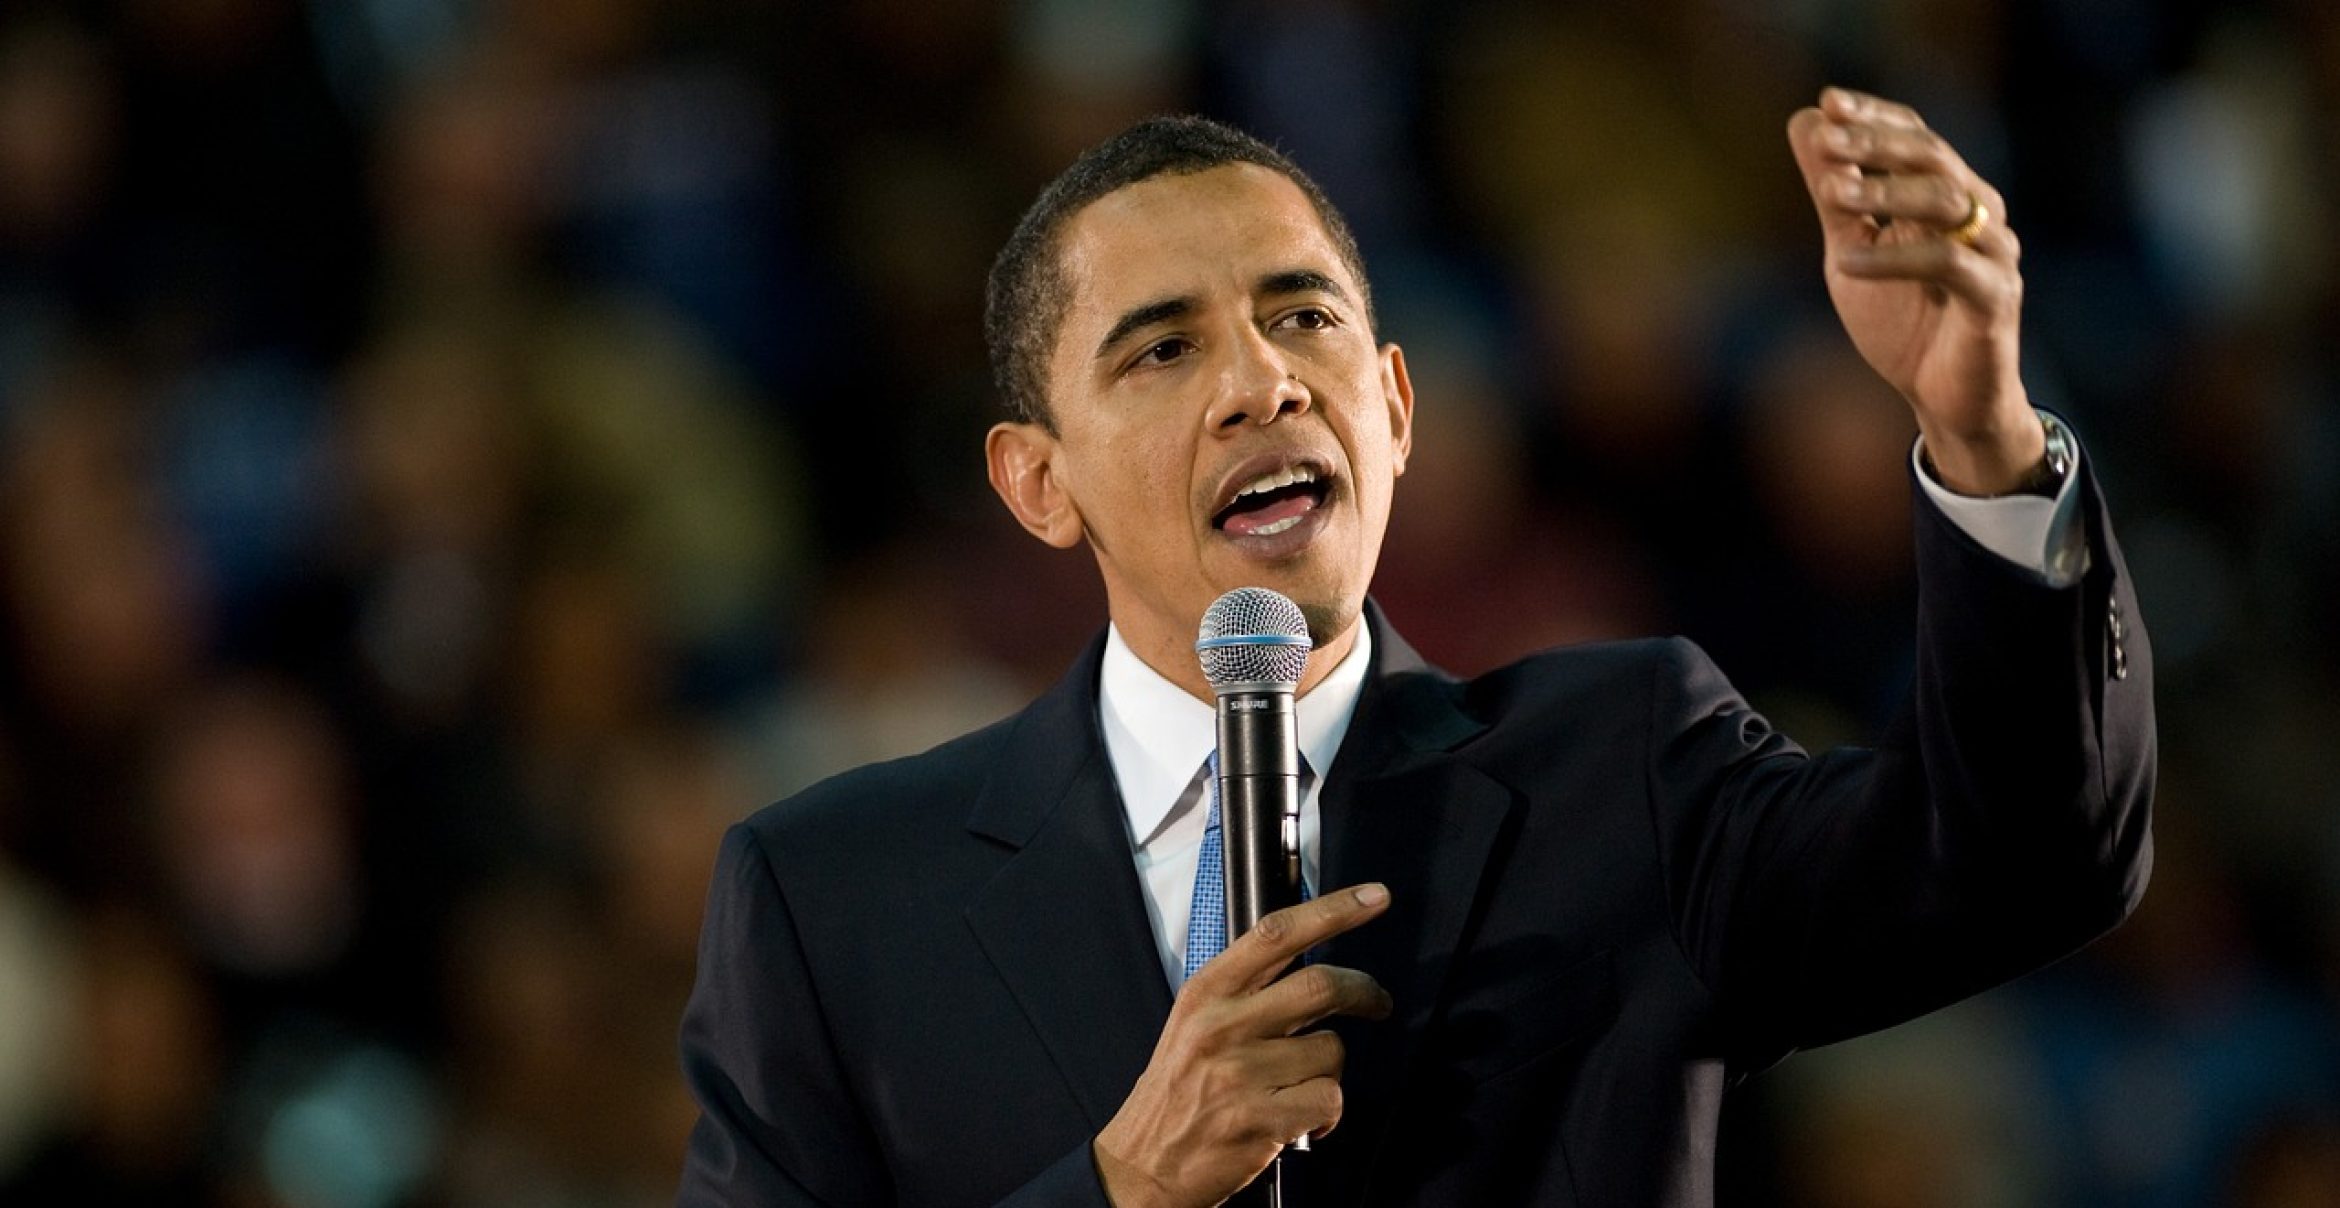 12 Songs, die Barack Obama diesen Sommer rauf und runter hört